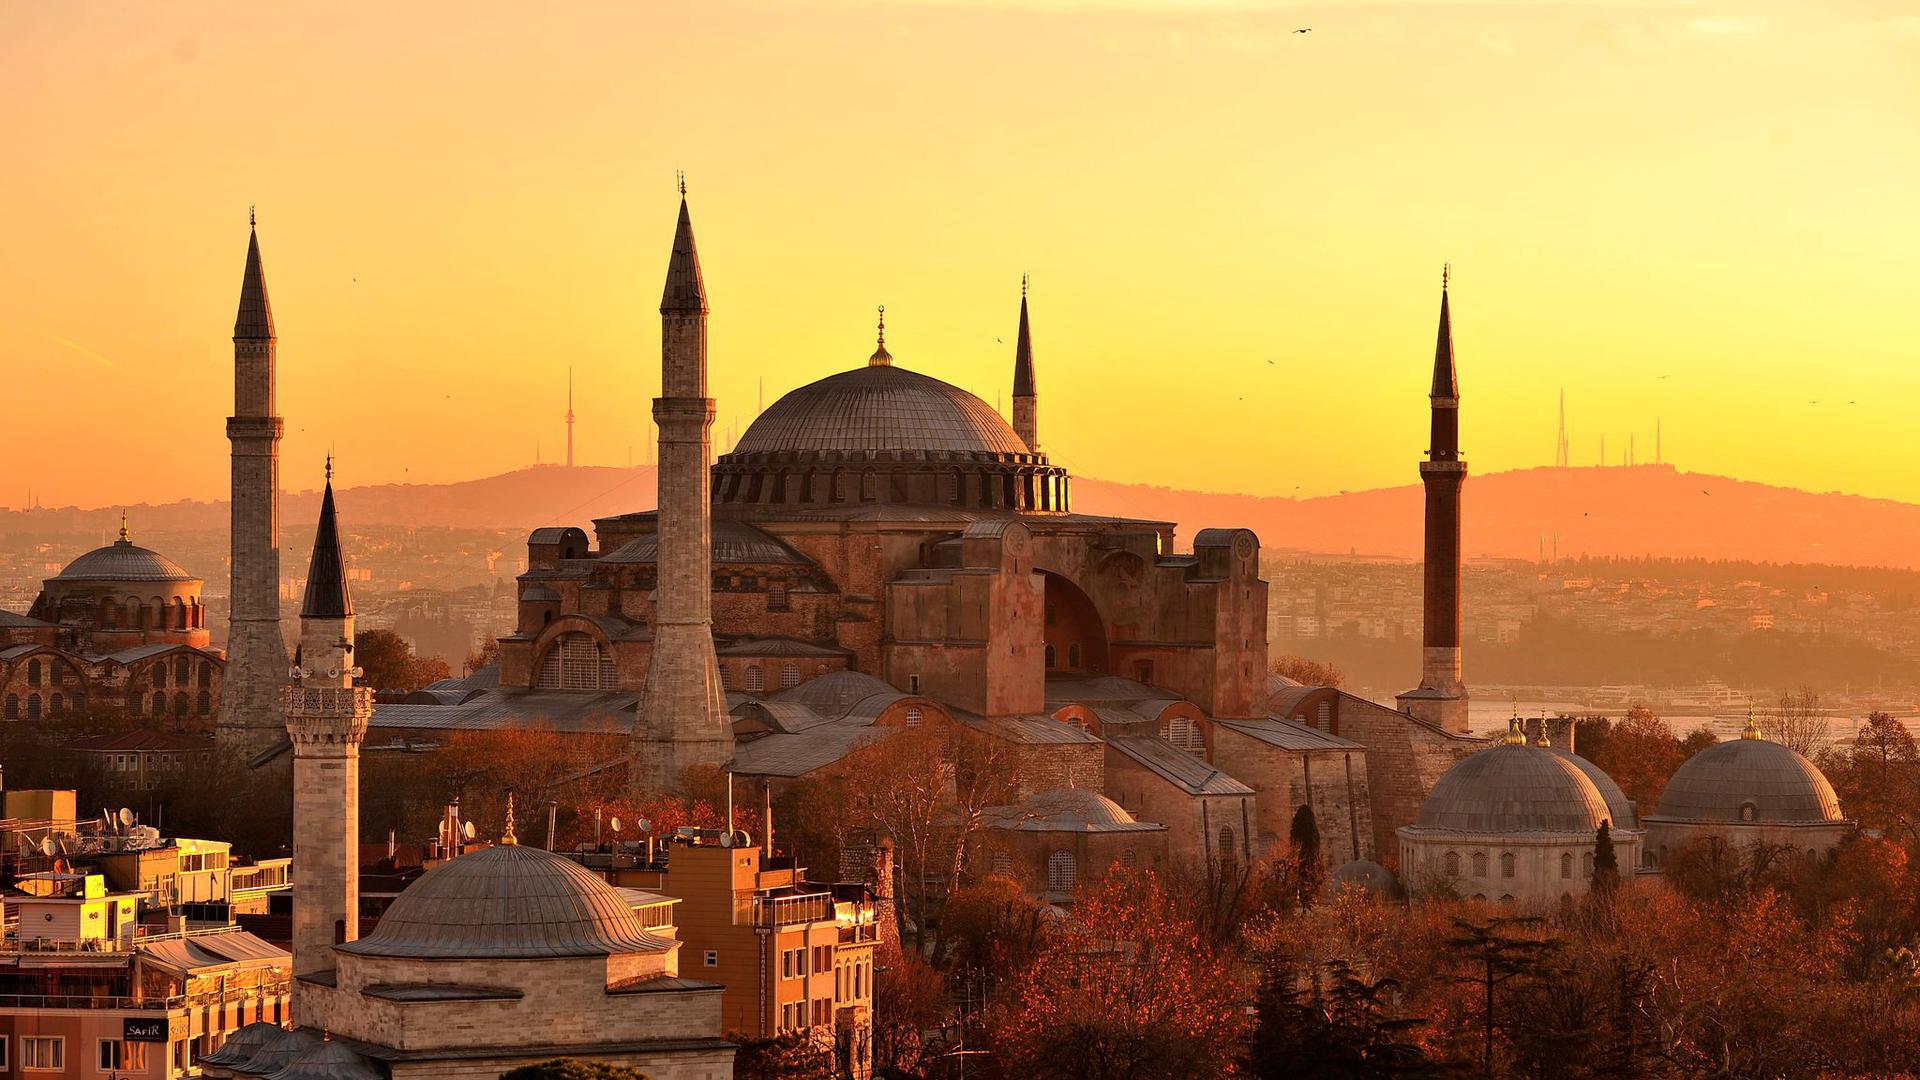 Die Hagia Sopia, aufgenommen kurz nach Sonnenaufgang. Das Istanbuler Wahrzeichen Hagia Sophia - einst Kirche, dann unter den Osmanen eine Moschee und von Republikgründer Atatürk 1934 säkularisiert und zum Museum gemacht - wird ab Freitag wieder als Moschee genutzt.